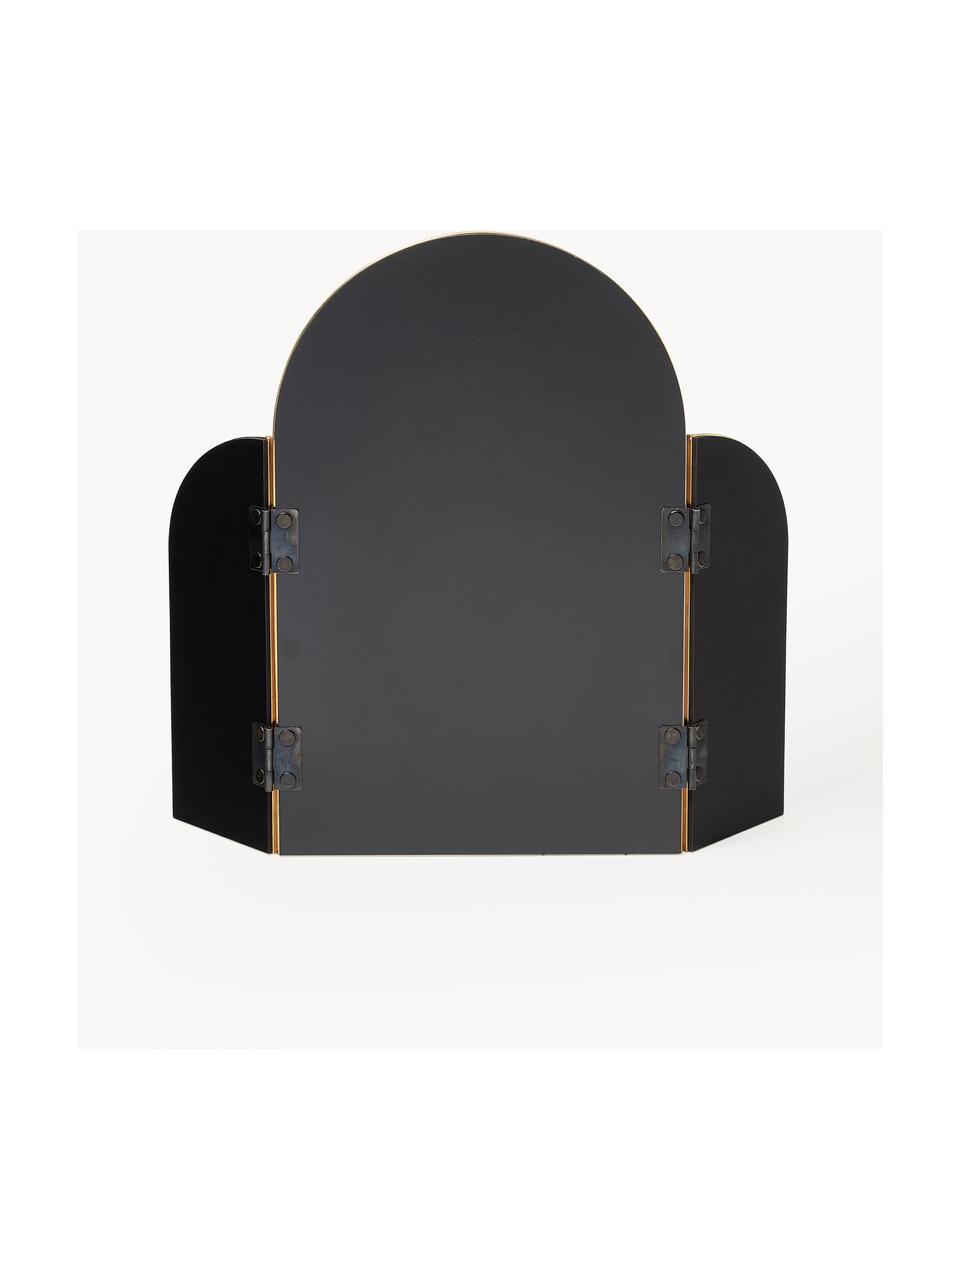 Drievak spiegel Maple, Lijst: metaal, gecoat, Goudkleurig, B 47 x H 37 cm